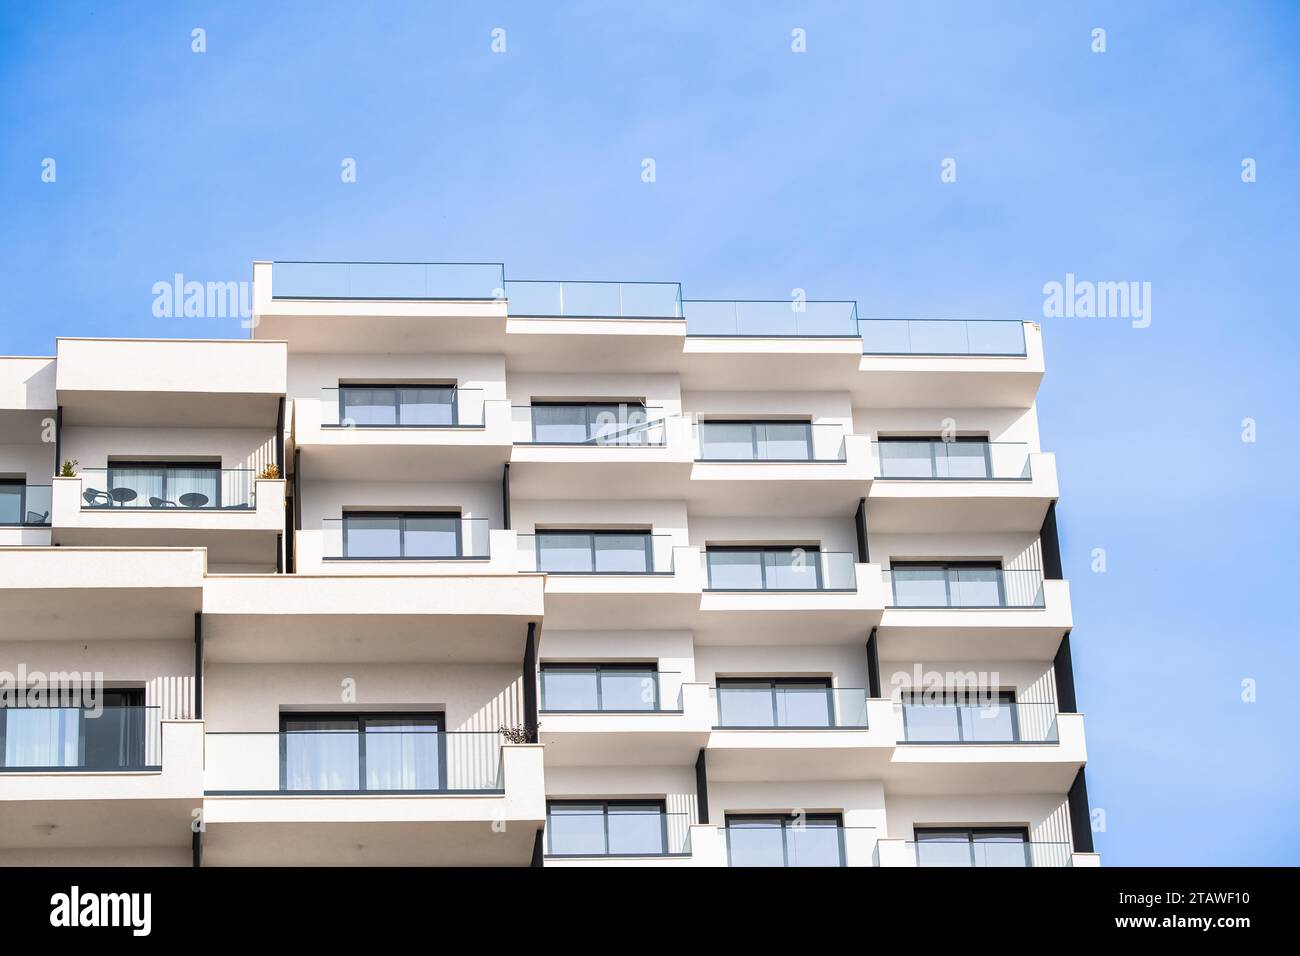 Immeuble d'appartements de luxe moderne avec balcons. Maison d'appartements multifamiliale moderne. Condominium et immeuble d'appartements Banque D'Images